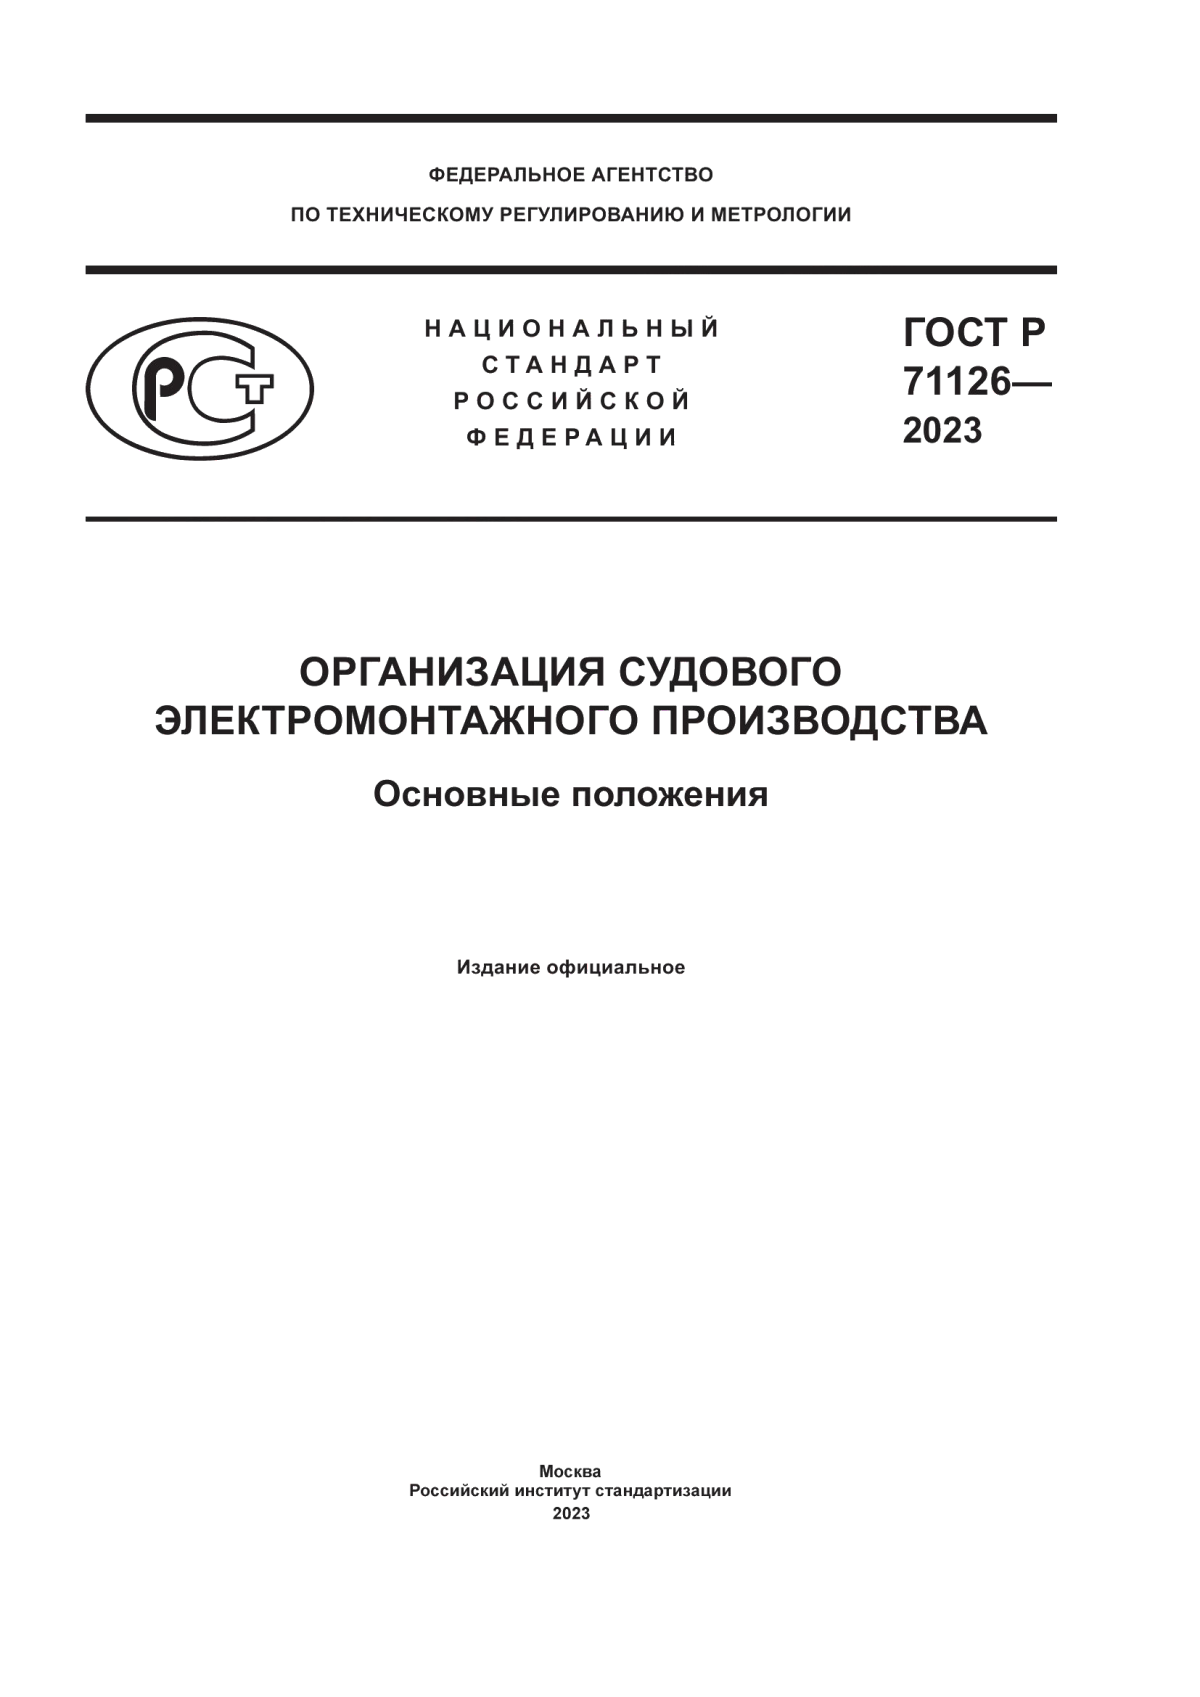 ГОСТ Р 71126-2023 Организация судового электромонтажного производства. Основные положения